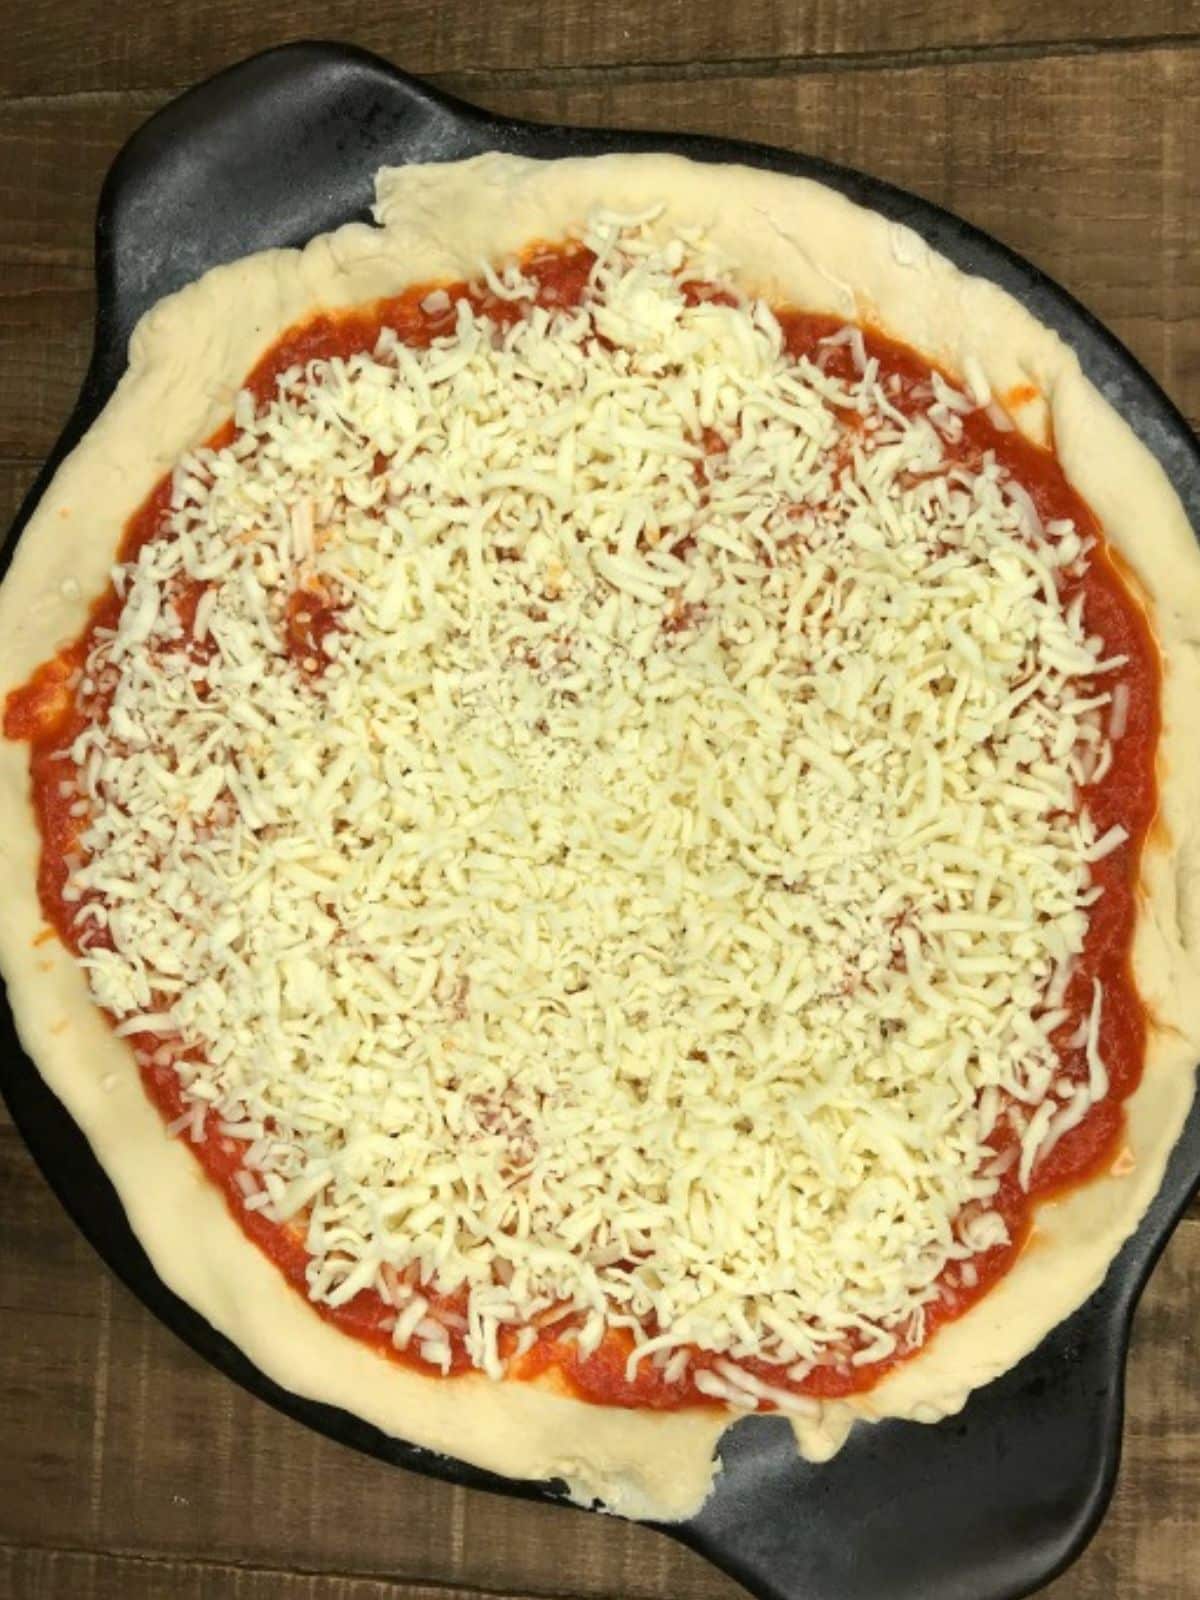 Add tomato sauce and mozzarella cheese.